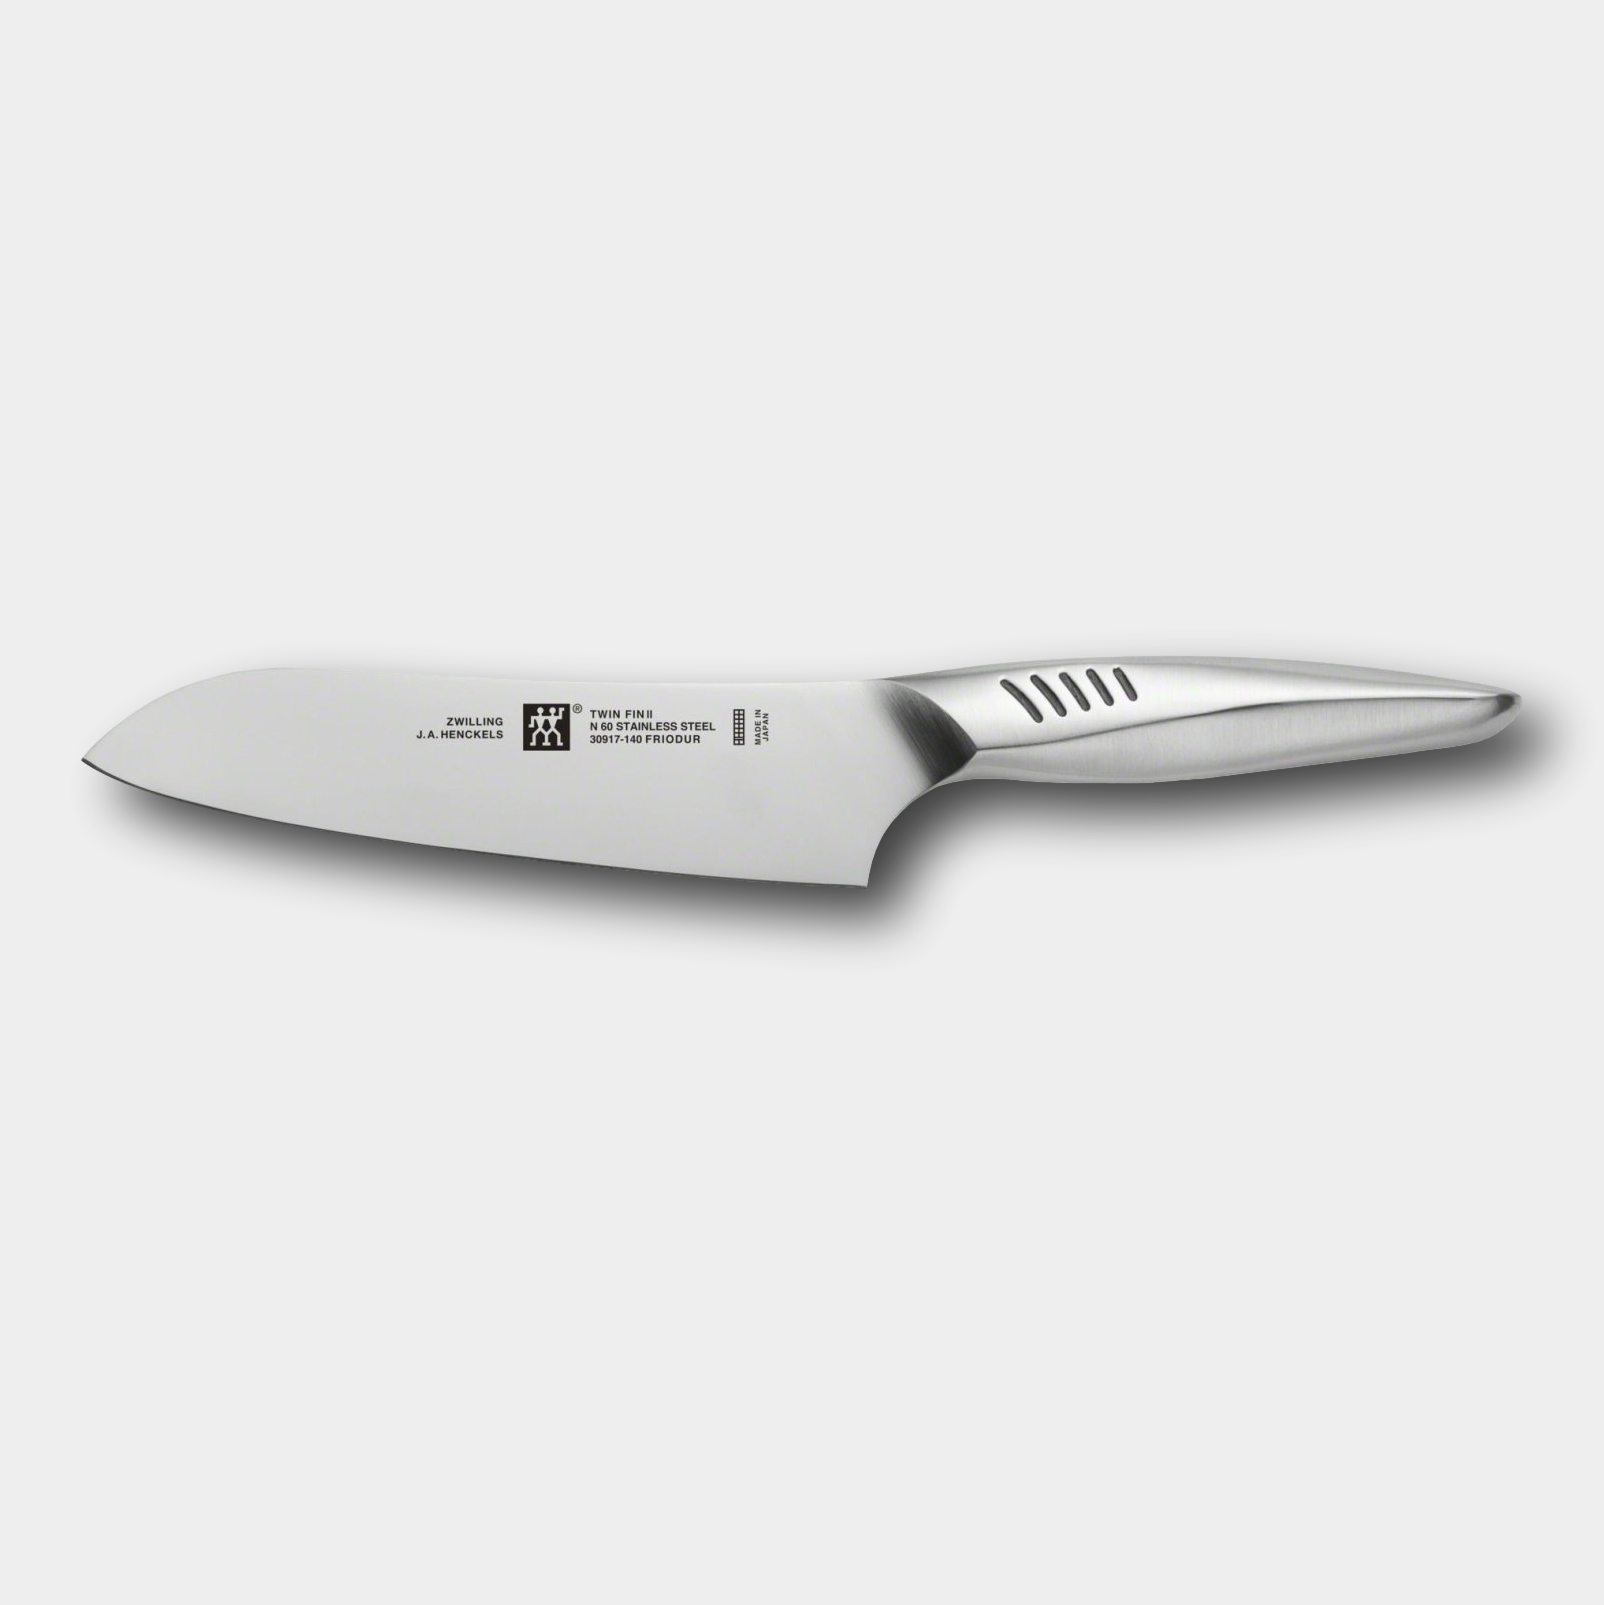 ZWILLING® TWIN Fin II  14cm Santoku Knife